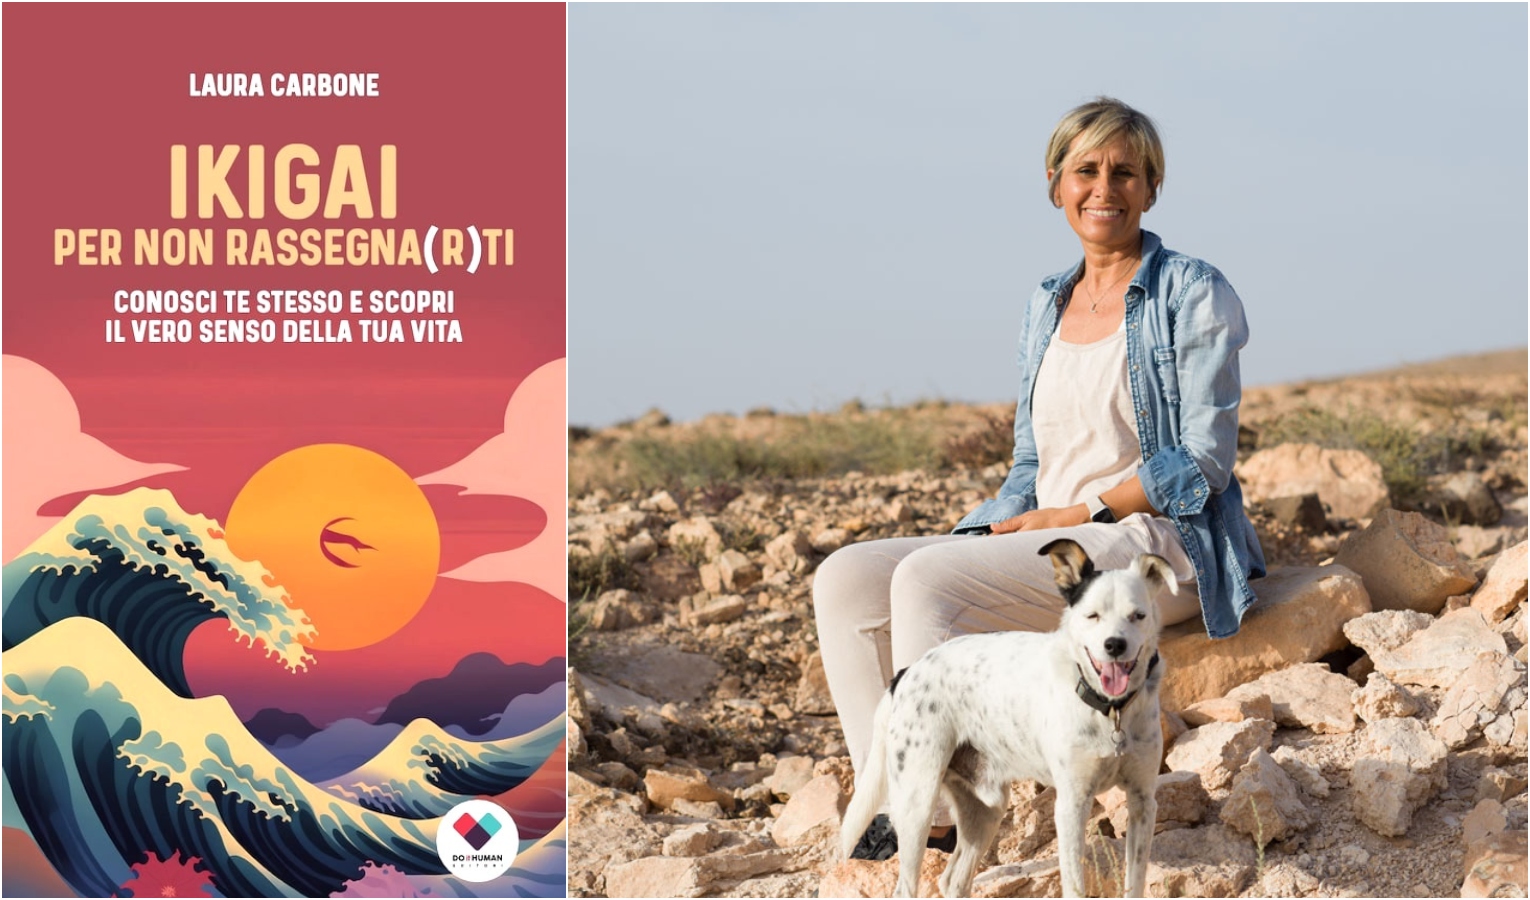 'Ikigai per non rassegna(r)ti', il nuovo libro della genovese Laura Carbone